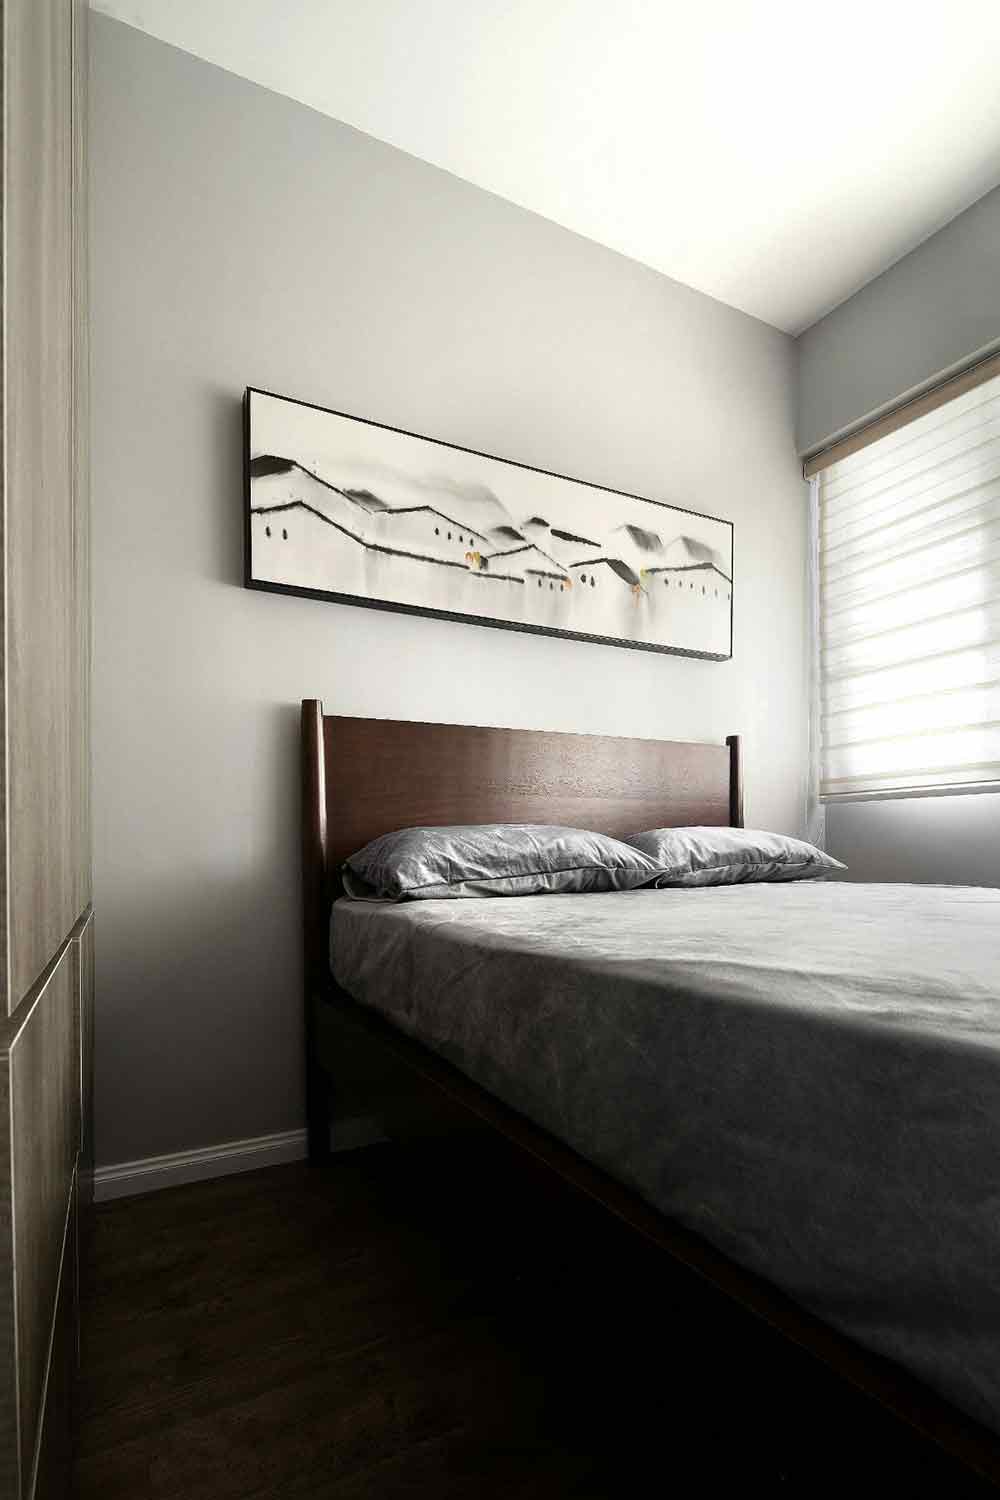 面积狭小并没有给客卧的装修带来明显的限制，简化的家具陈设提供了充足的活动空间。